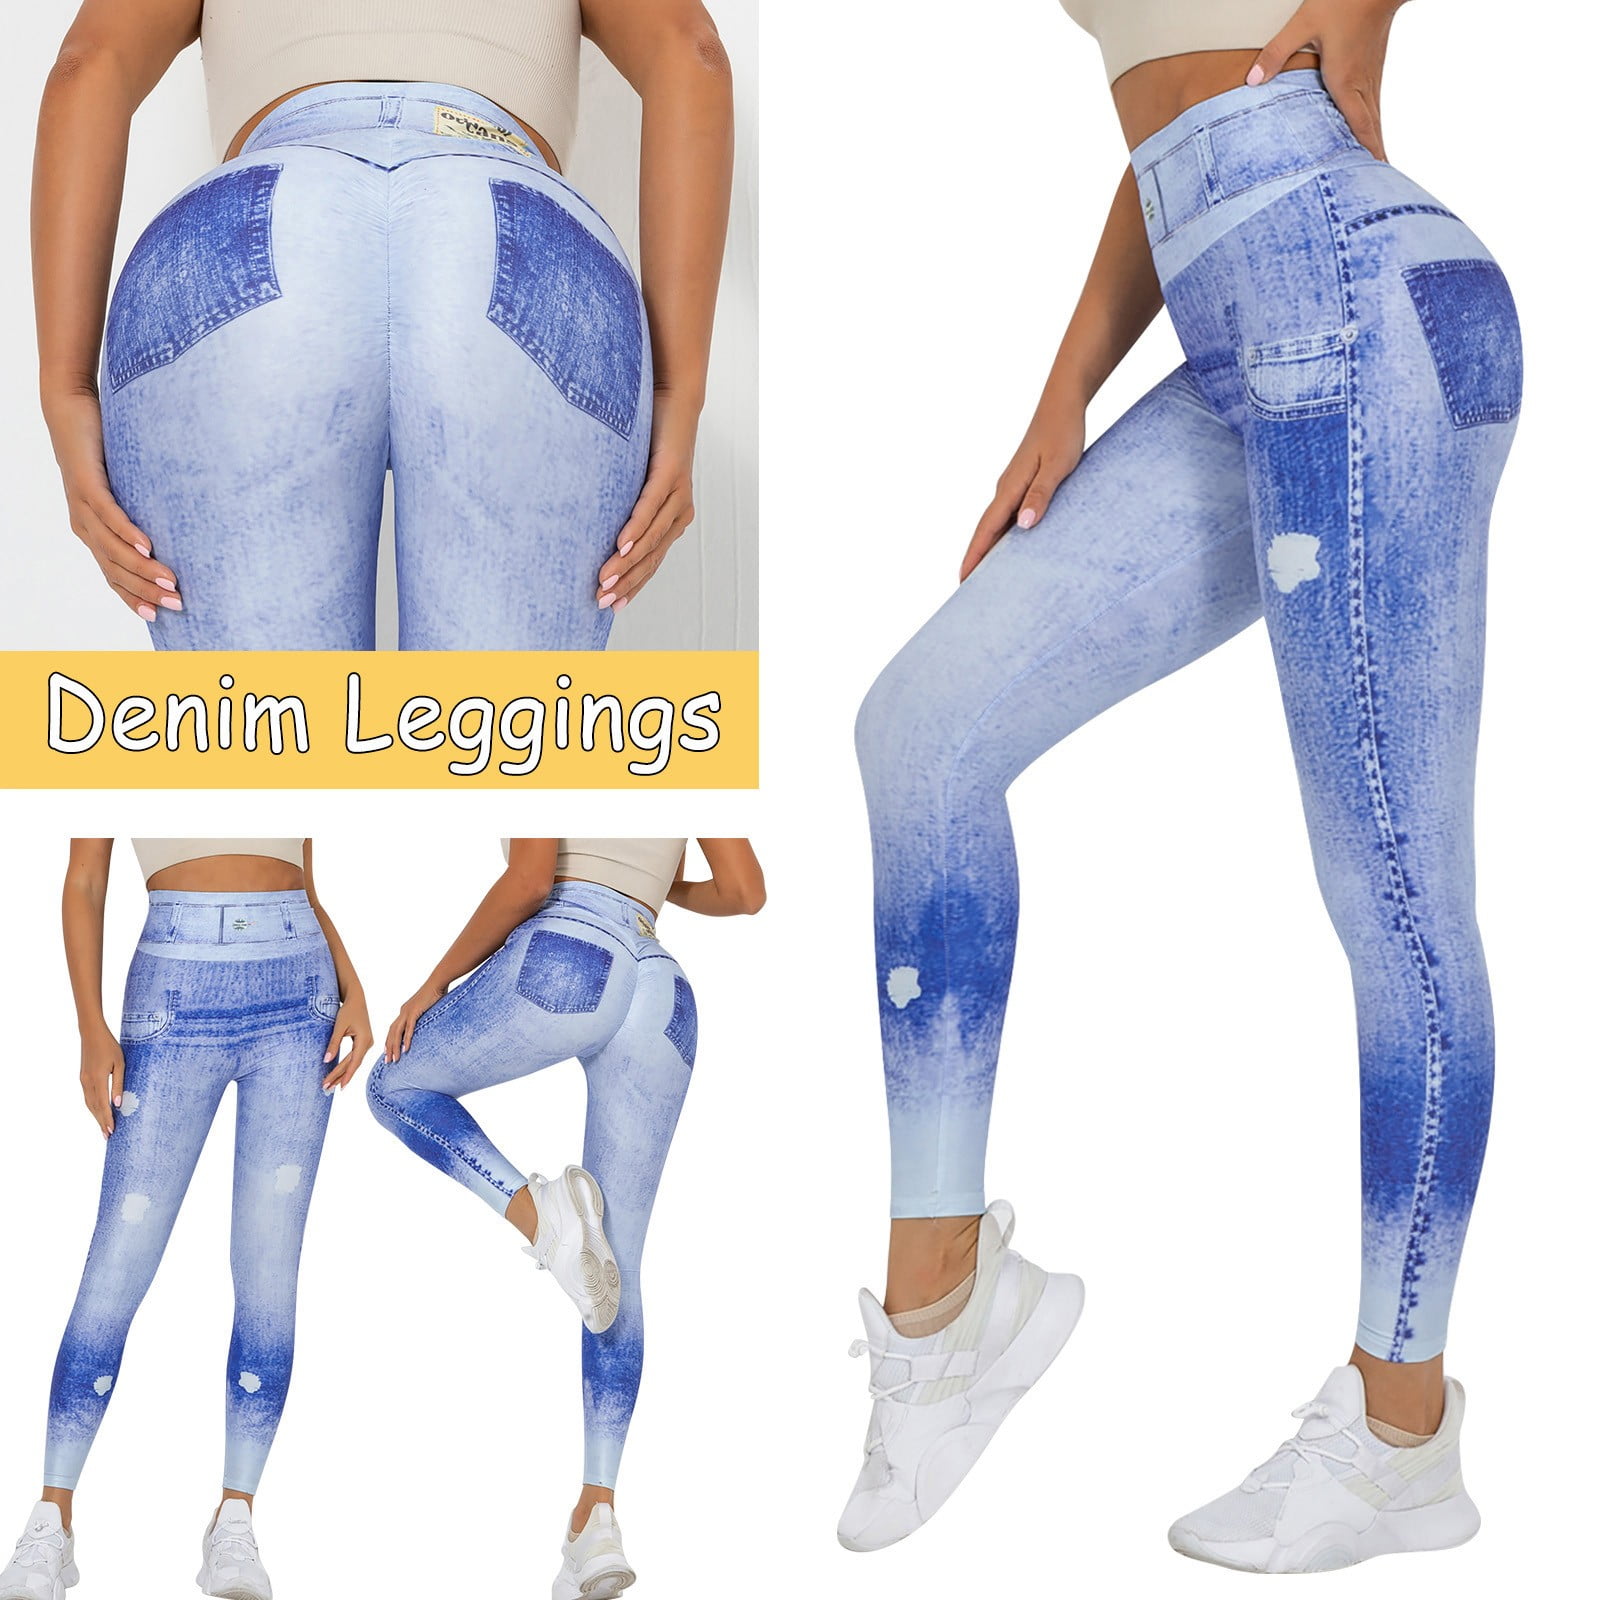 2p JCPenney Worthington Jean Denim-Look Leggings - S/M, M/L- Black, White,  Blue